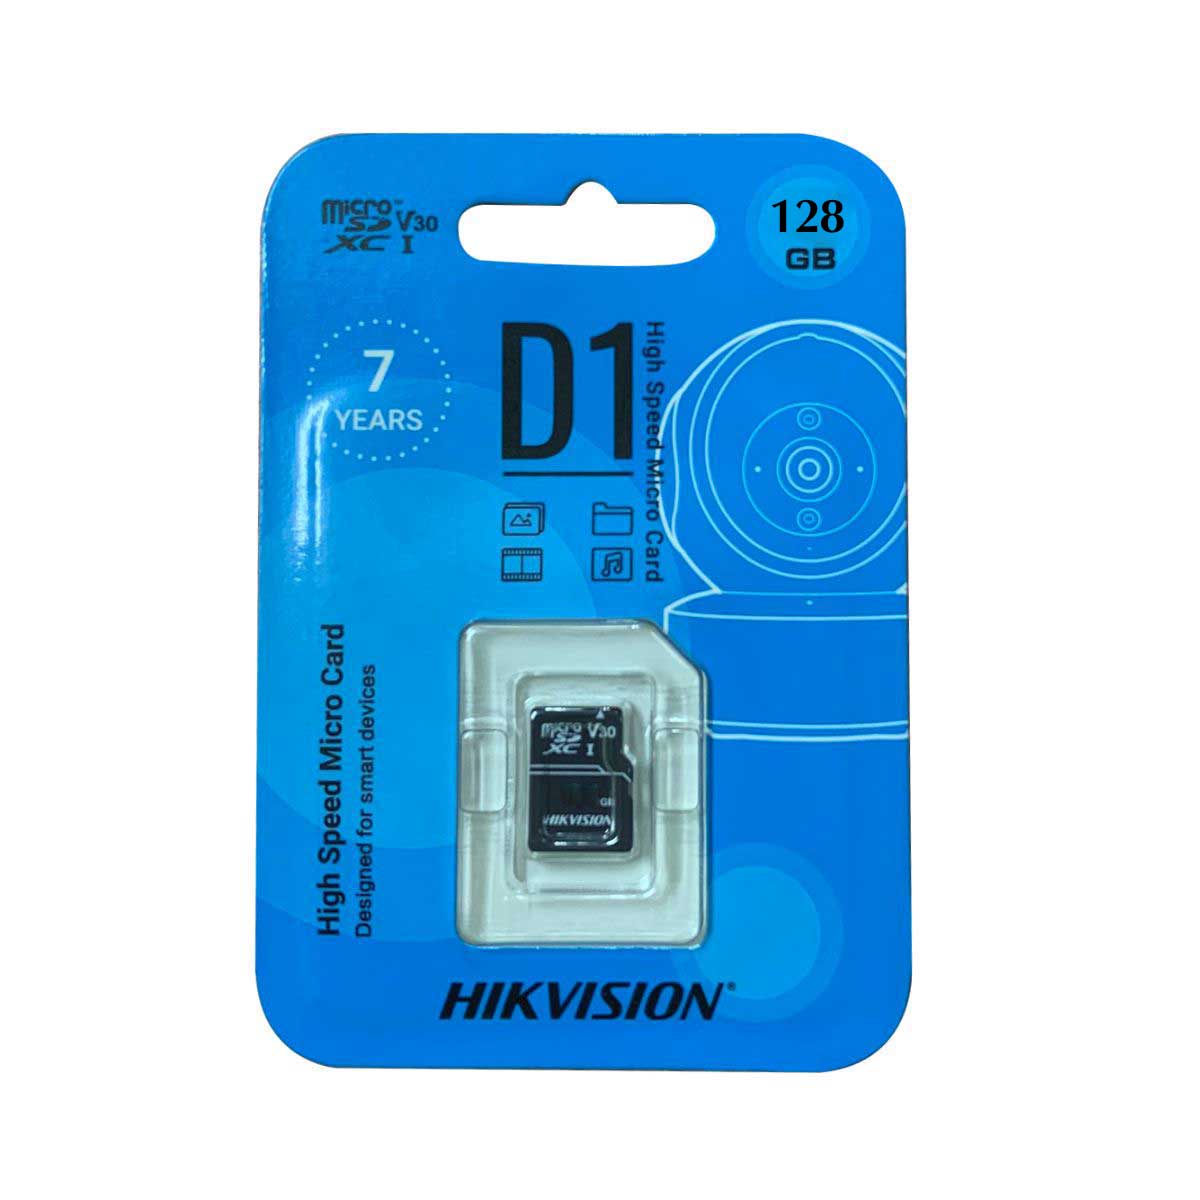 Thẻ nhớ MicroSD 128GB Hikvision chuyên dụng cho camera HS-TF-D1(STD)/128G tốc độ ghi 50MB/s, tốc độ đọc 92MB/s